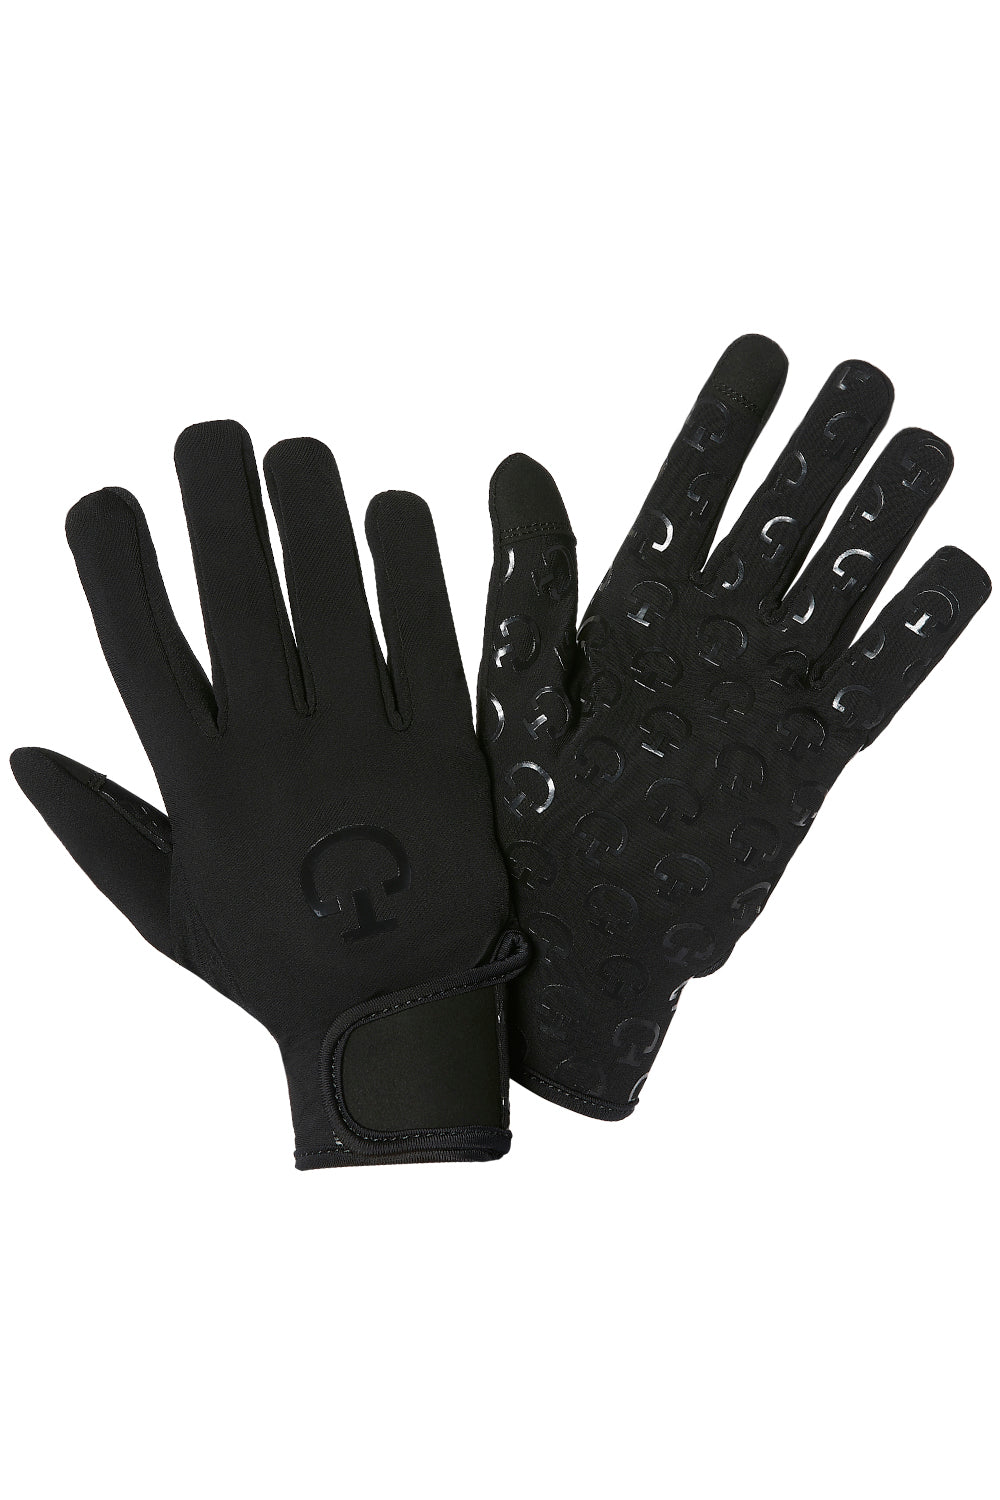 CT Winter Glove